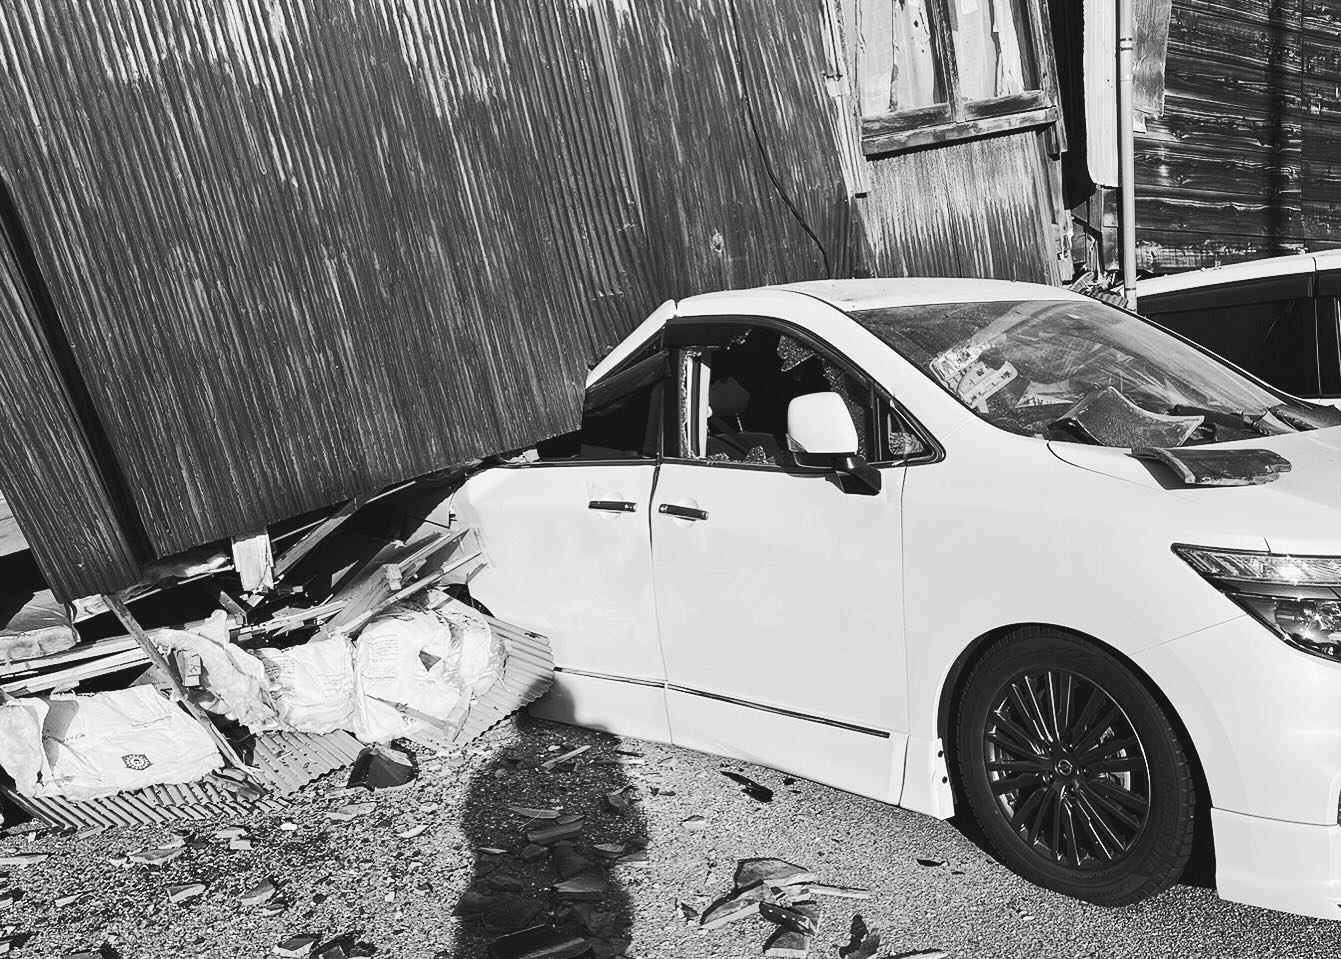 ウーマン村本、家族が輪島で被災「家と車が潰れた」　自衛隊の弟への思いも吐露「輪島に行こうと思ったけど…いまは心配するしかできず」